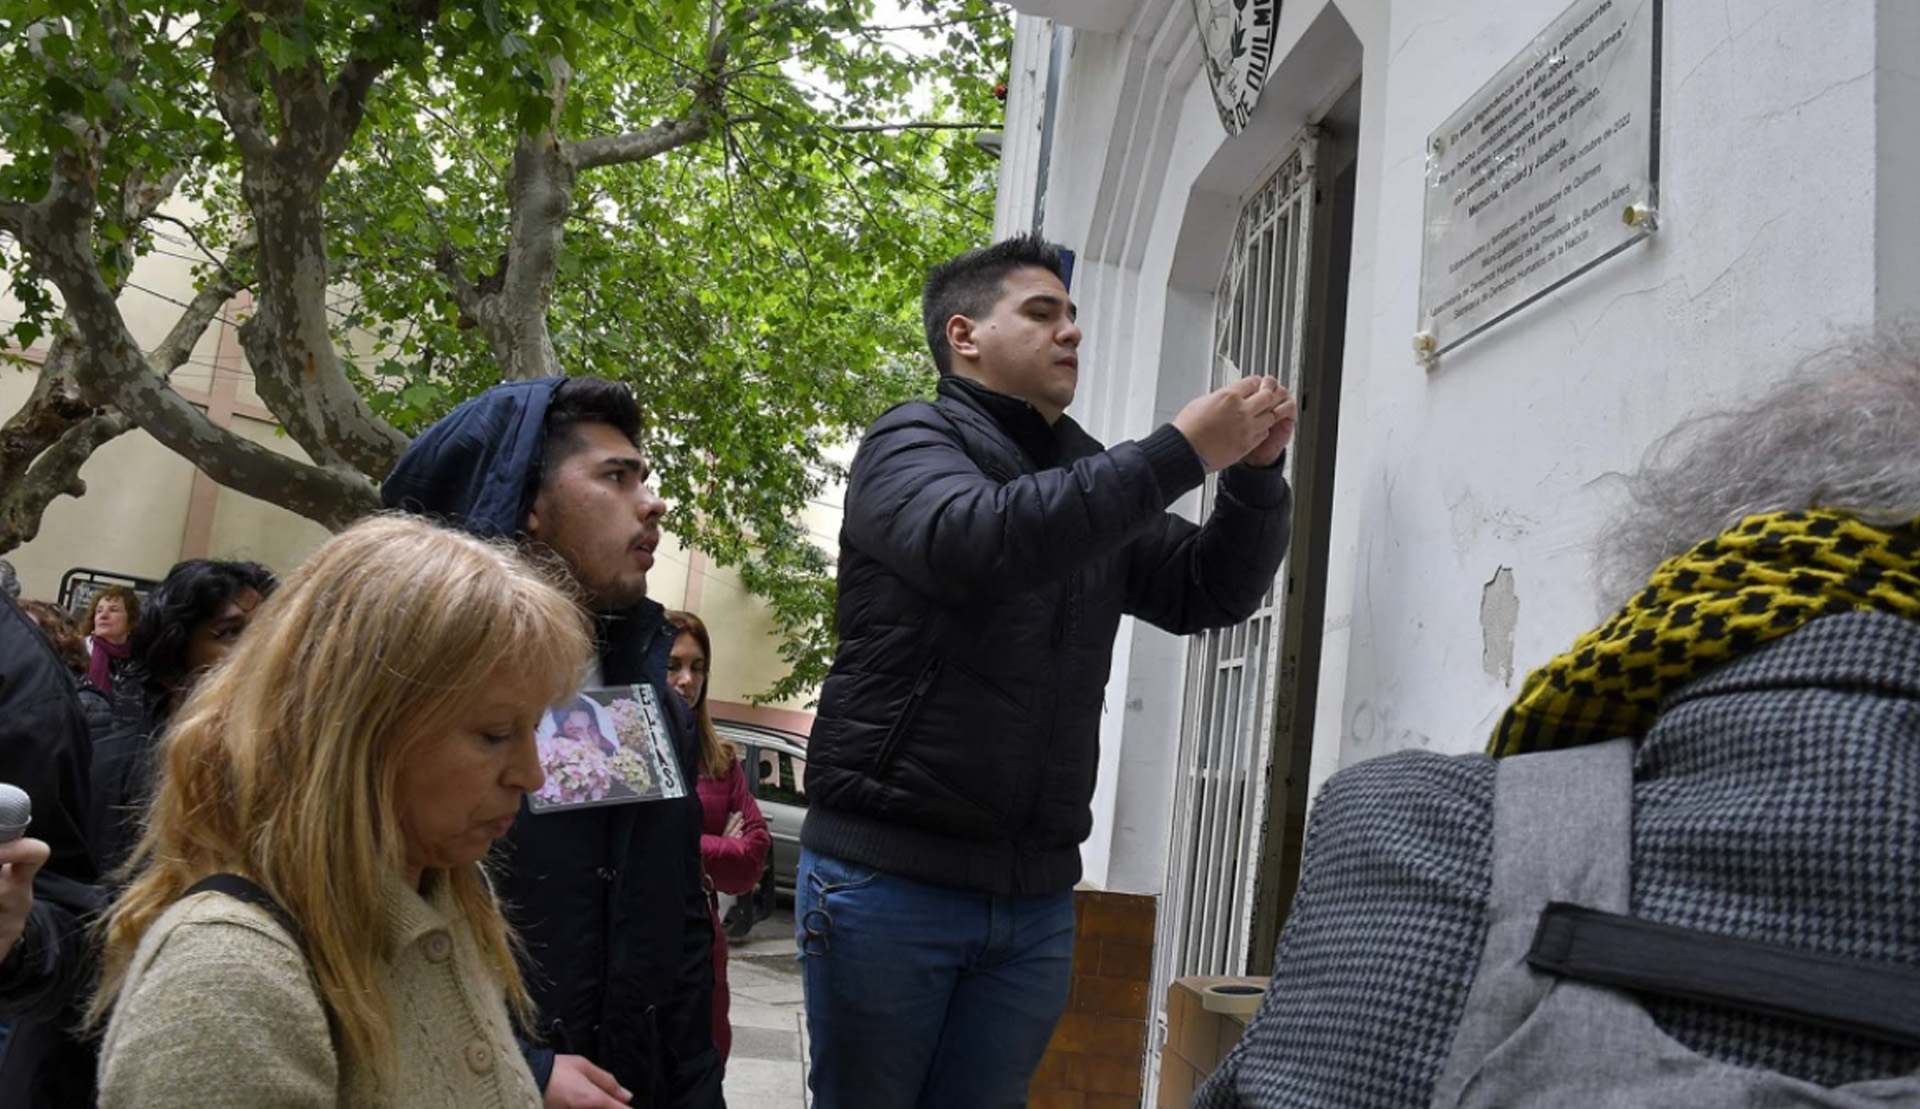 Familiares de los adolescentes colocaron una placa en la puerta de la comisaría donde ocurrió la masacre la tarde del 20 de octubre de 2004 (Foto/Télam)